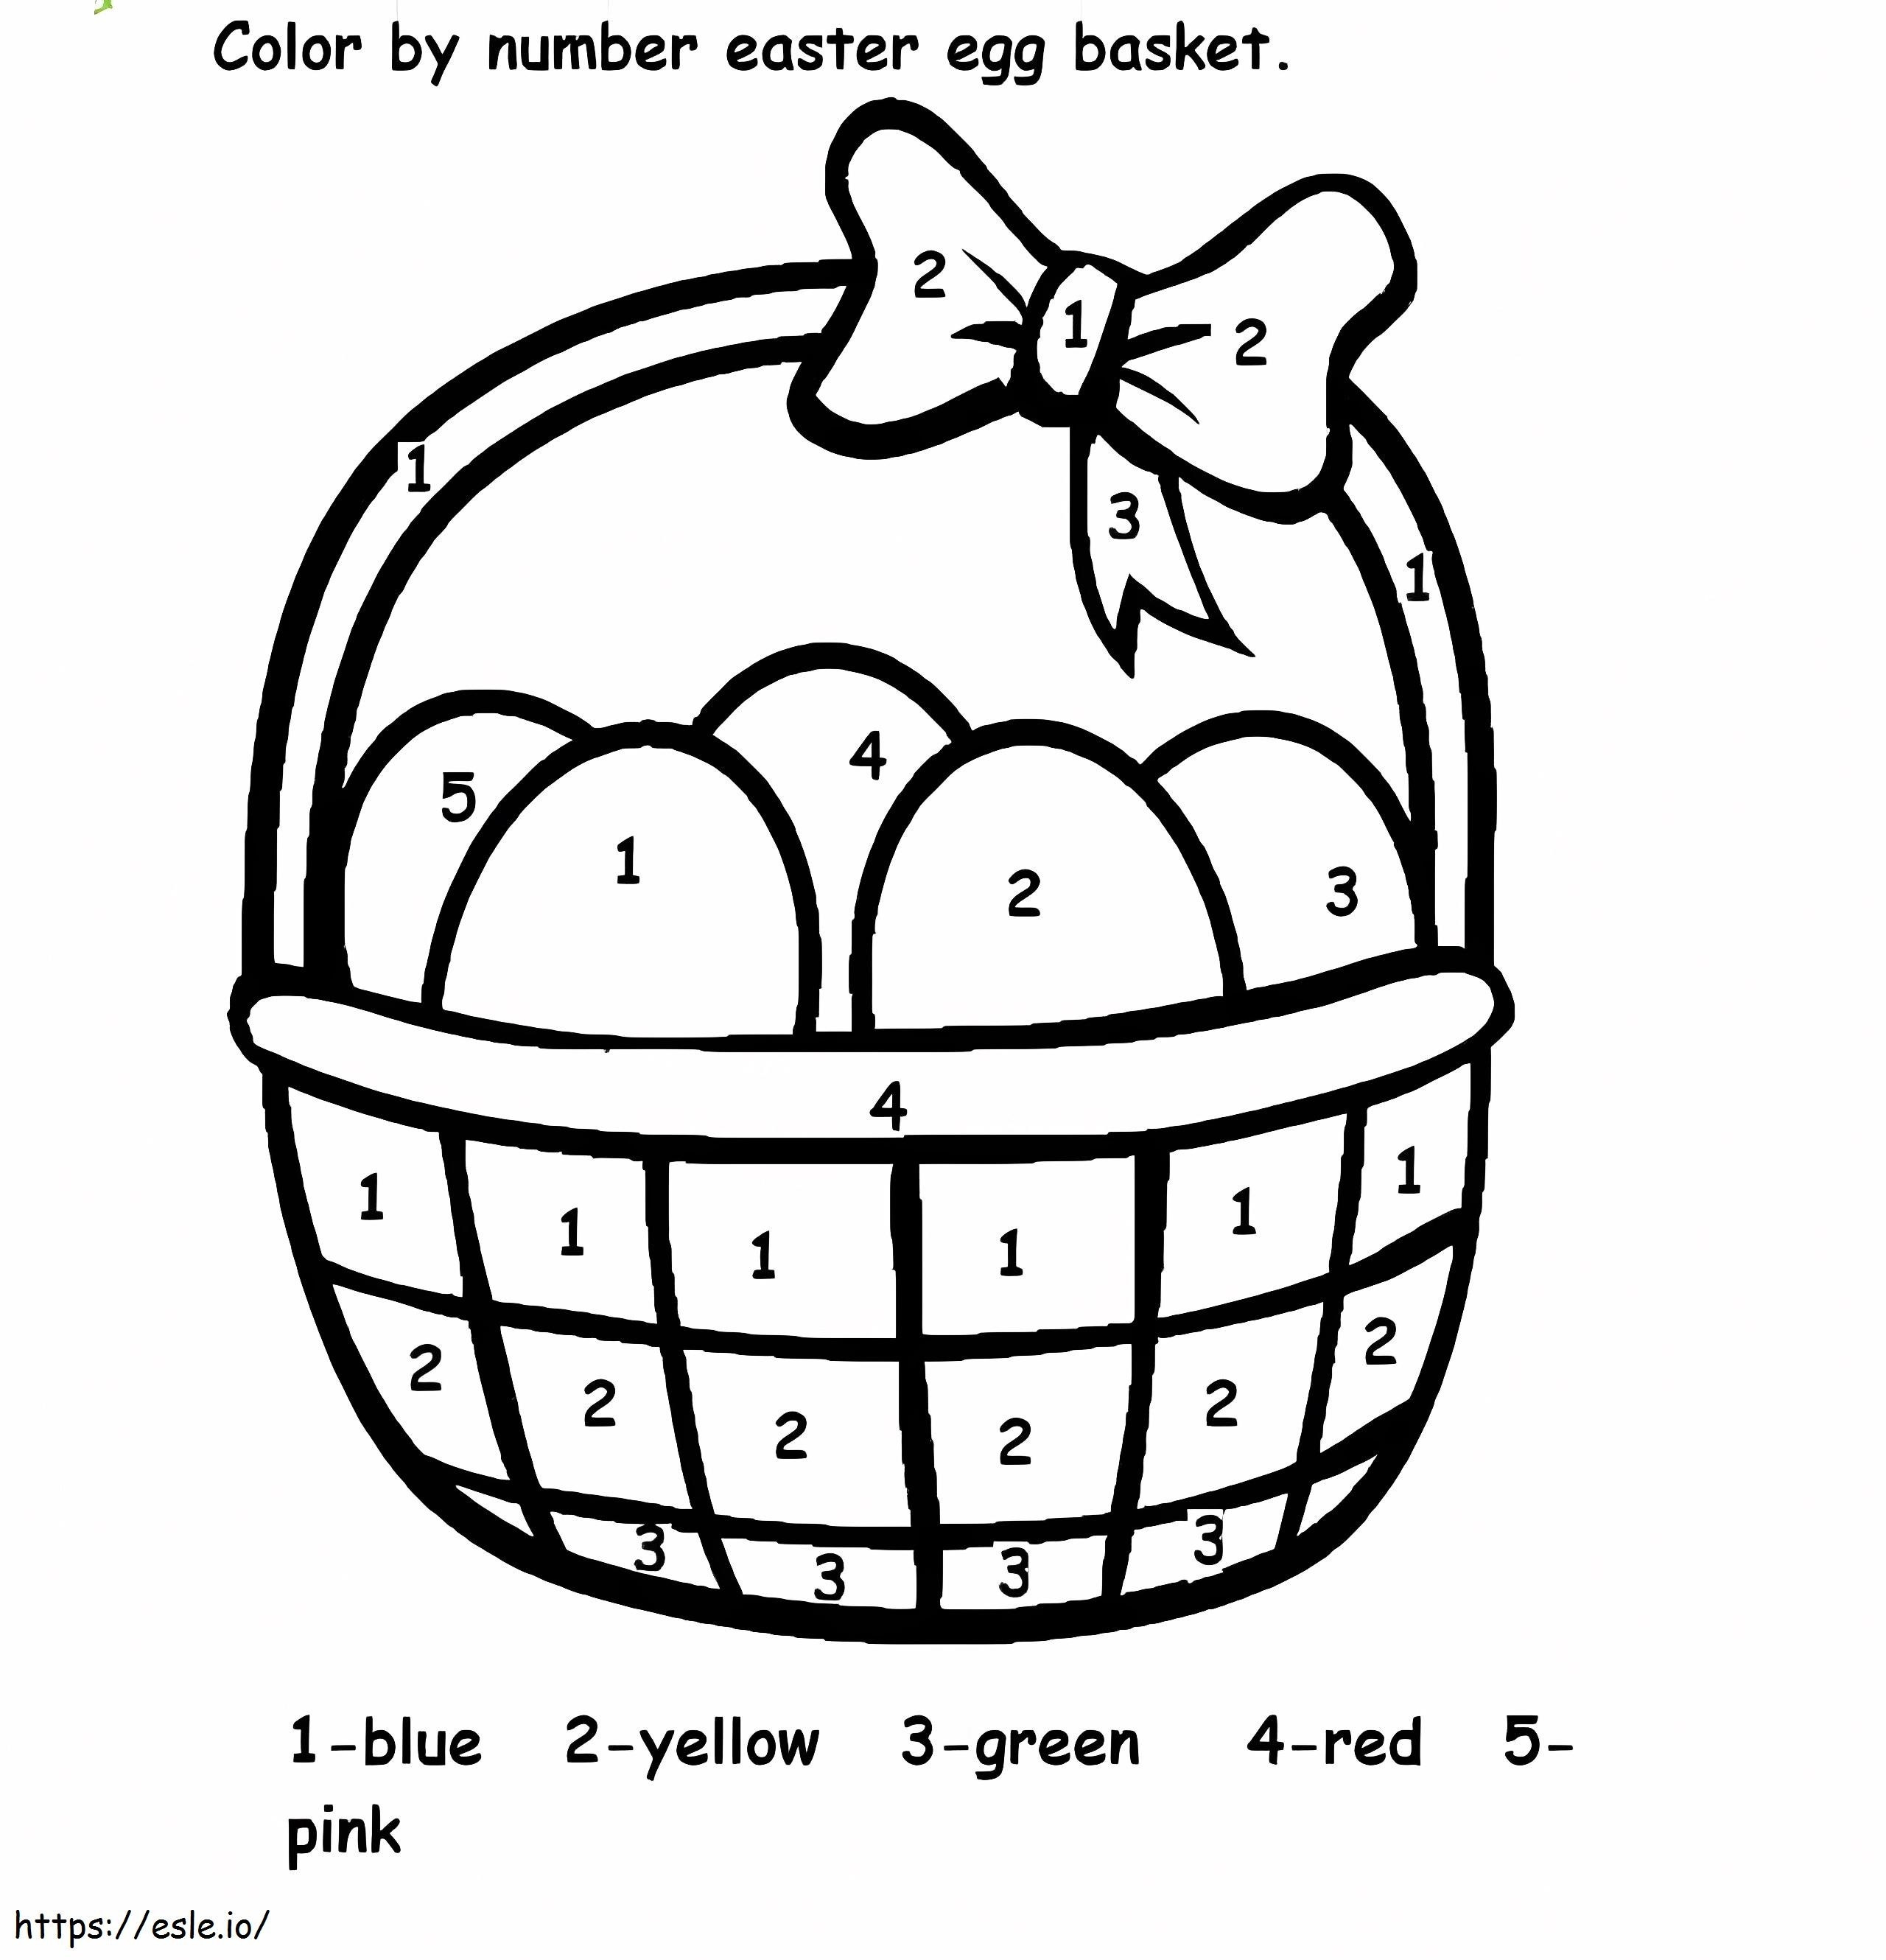 Kolorowanie koszyka jajek wielkanocnych według numerów kolorowanka